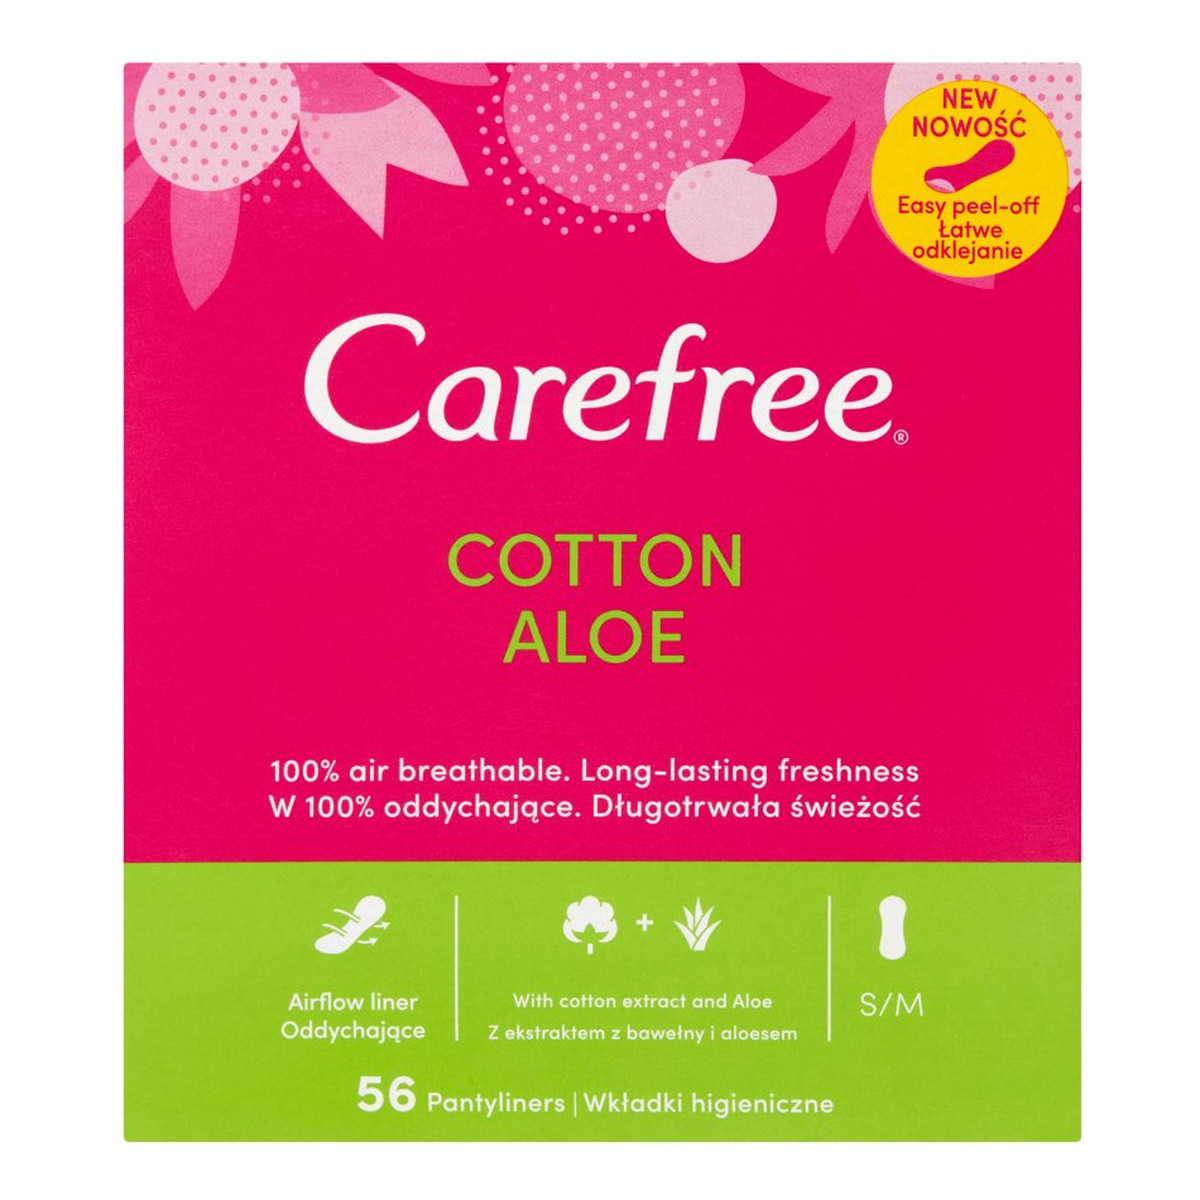 Carefree Cotton Aloe Wkładki higieniczne 56 sztuk